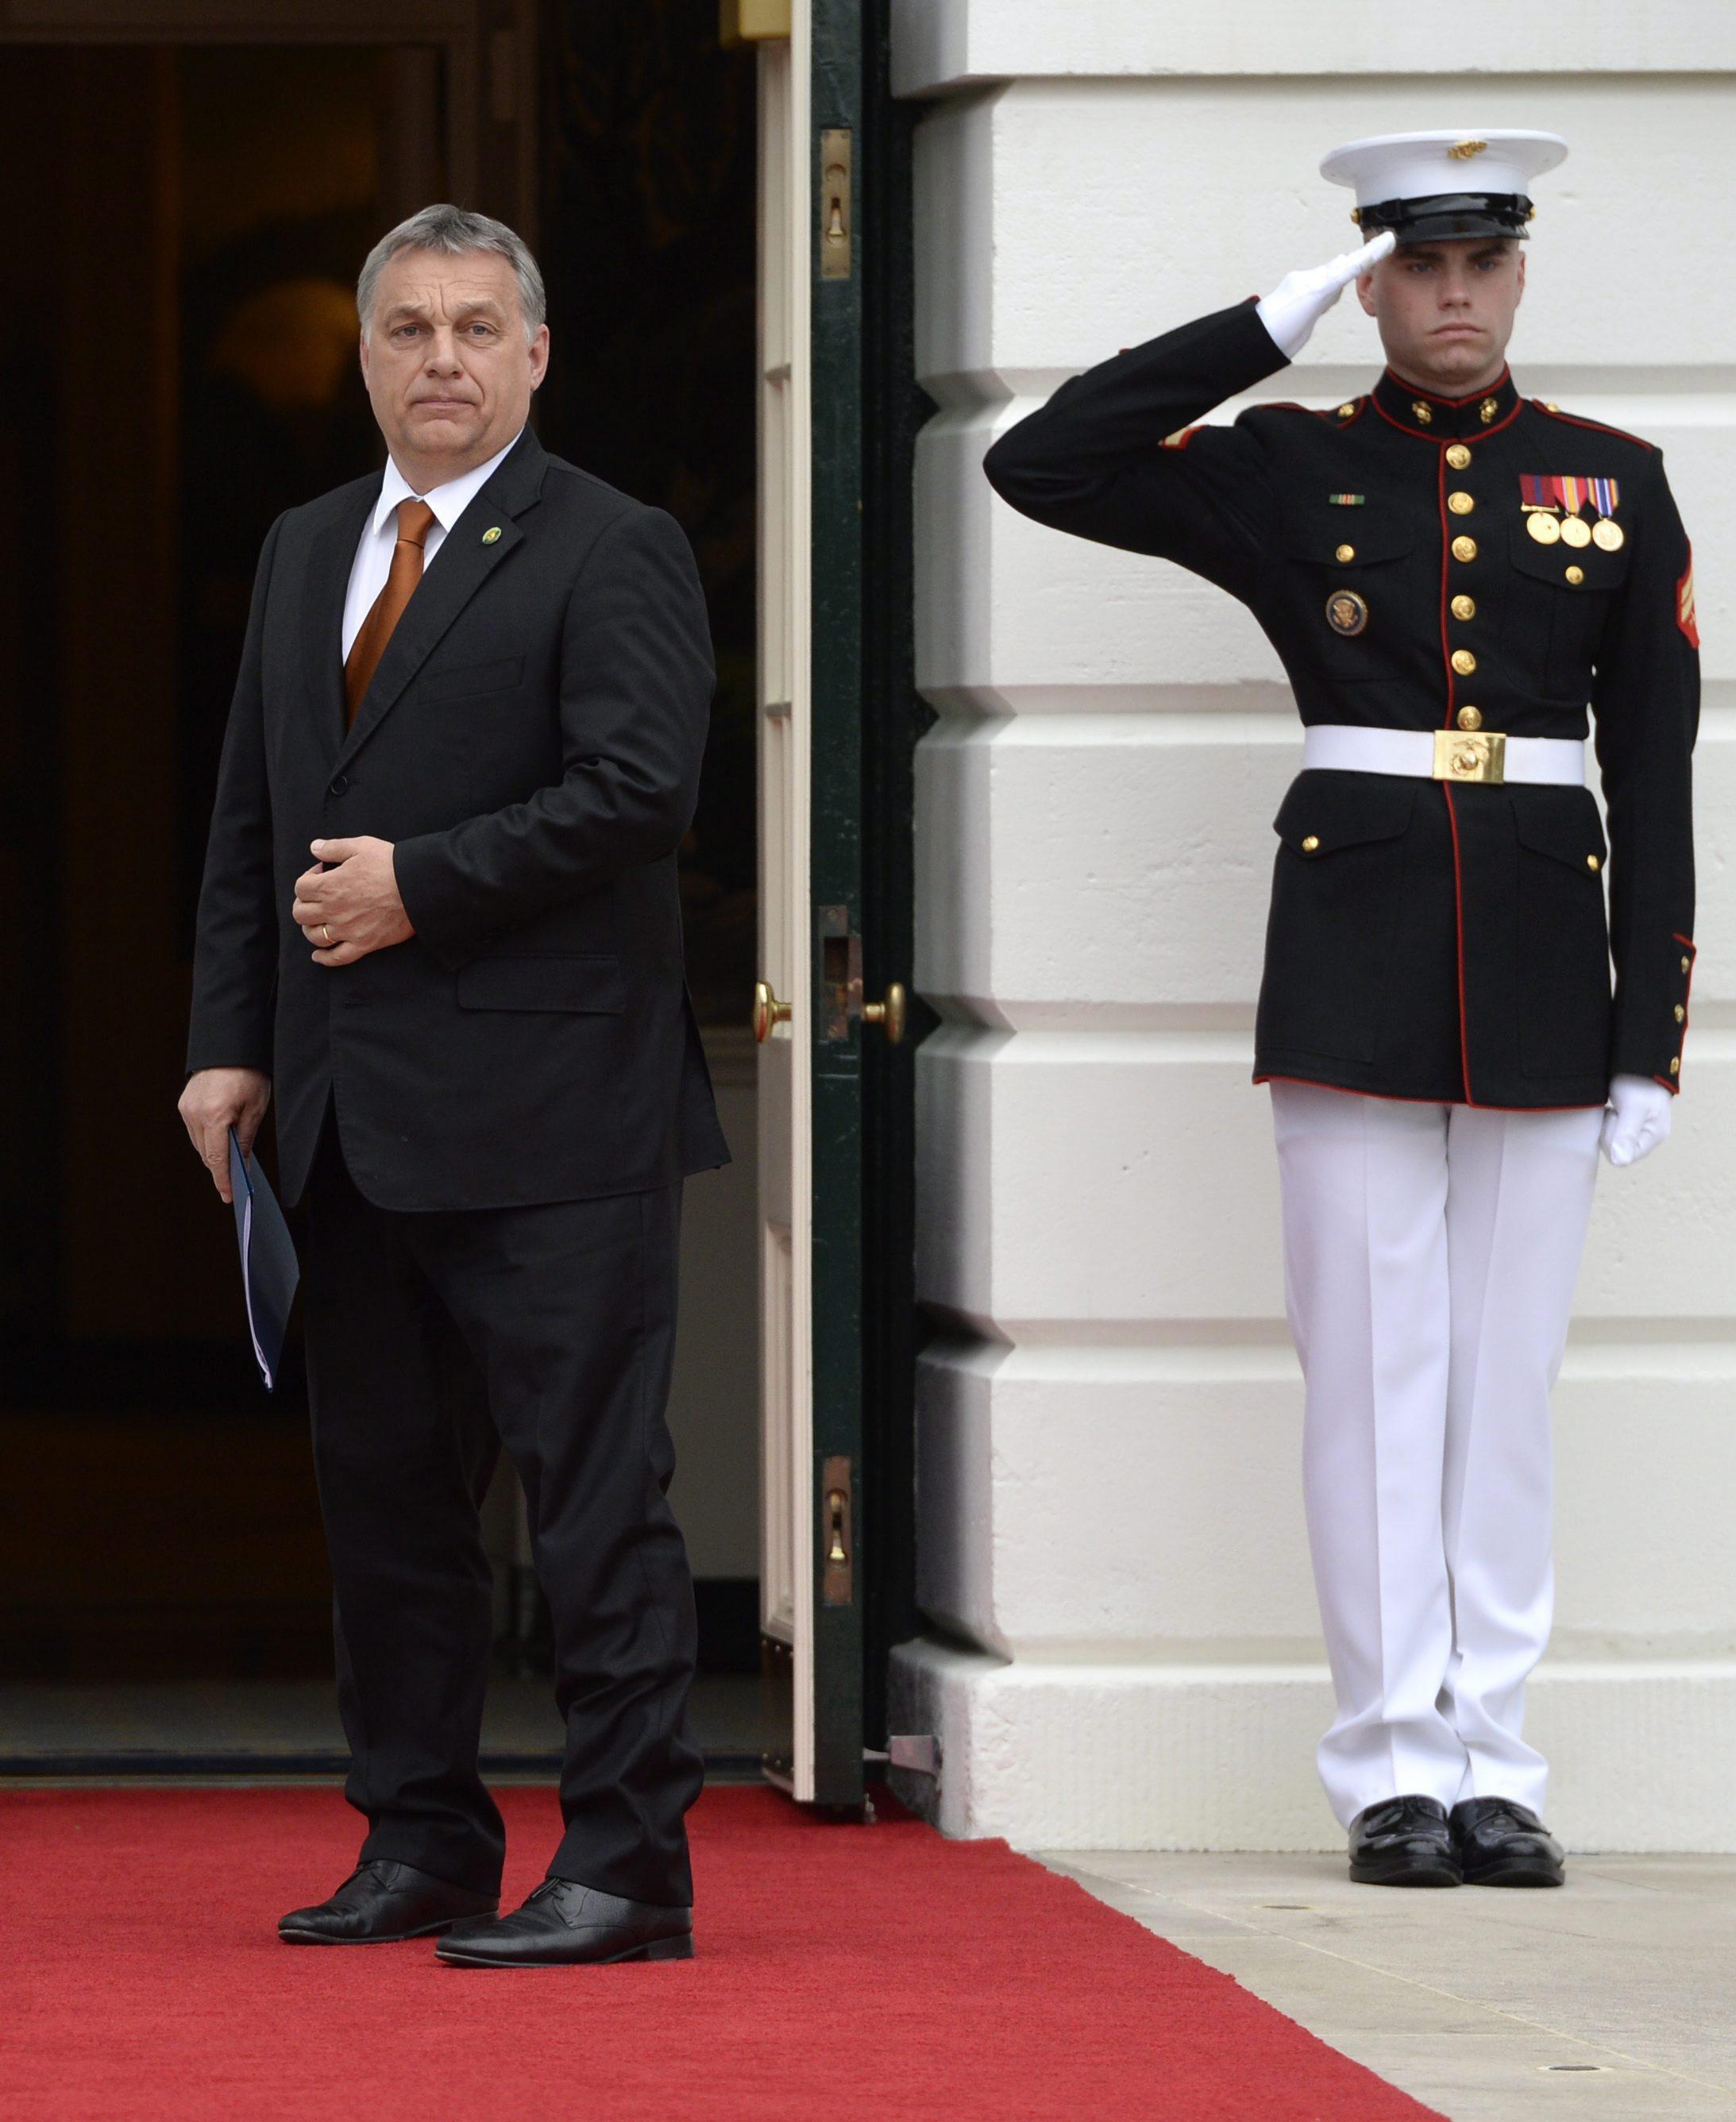 Orbán Viktor csoportos látogatóként érkezik a Fehér Házba. Imázsa csak papíron javul 